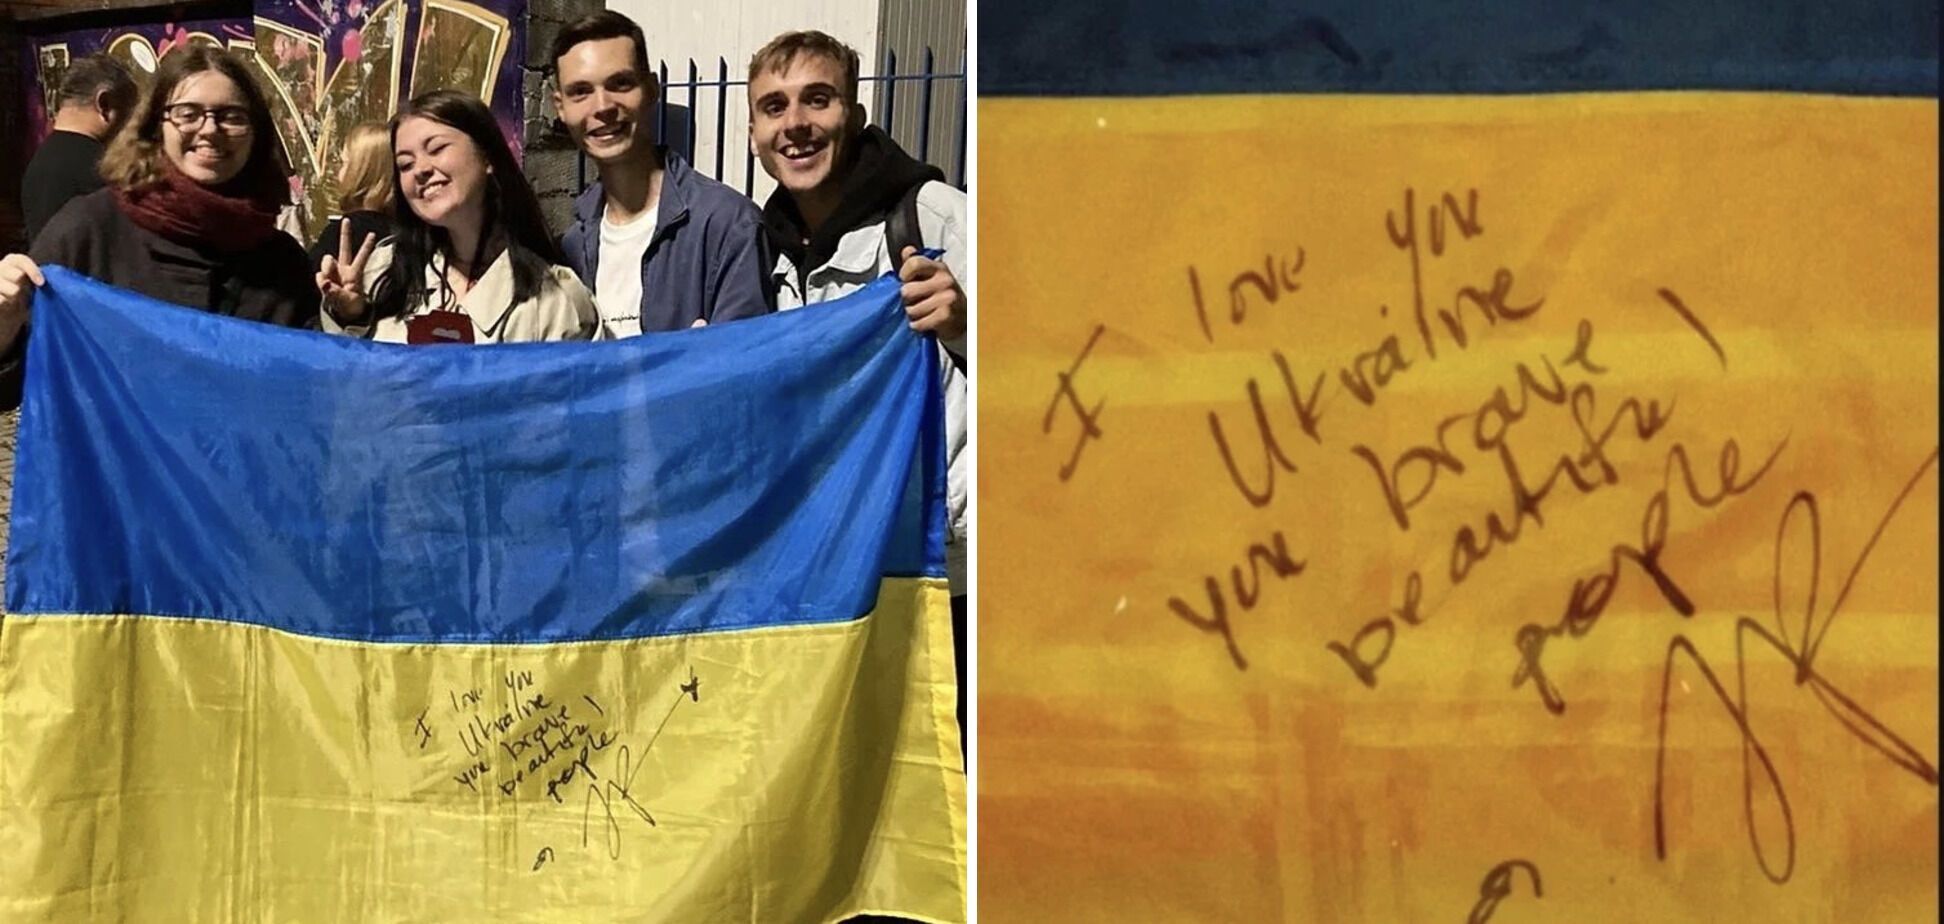 "Я люблю тебя, отважная Украина!" Певица LP на концерте в Варшаве подняла сине-желтый флаг